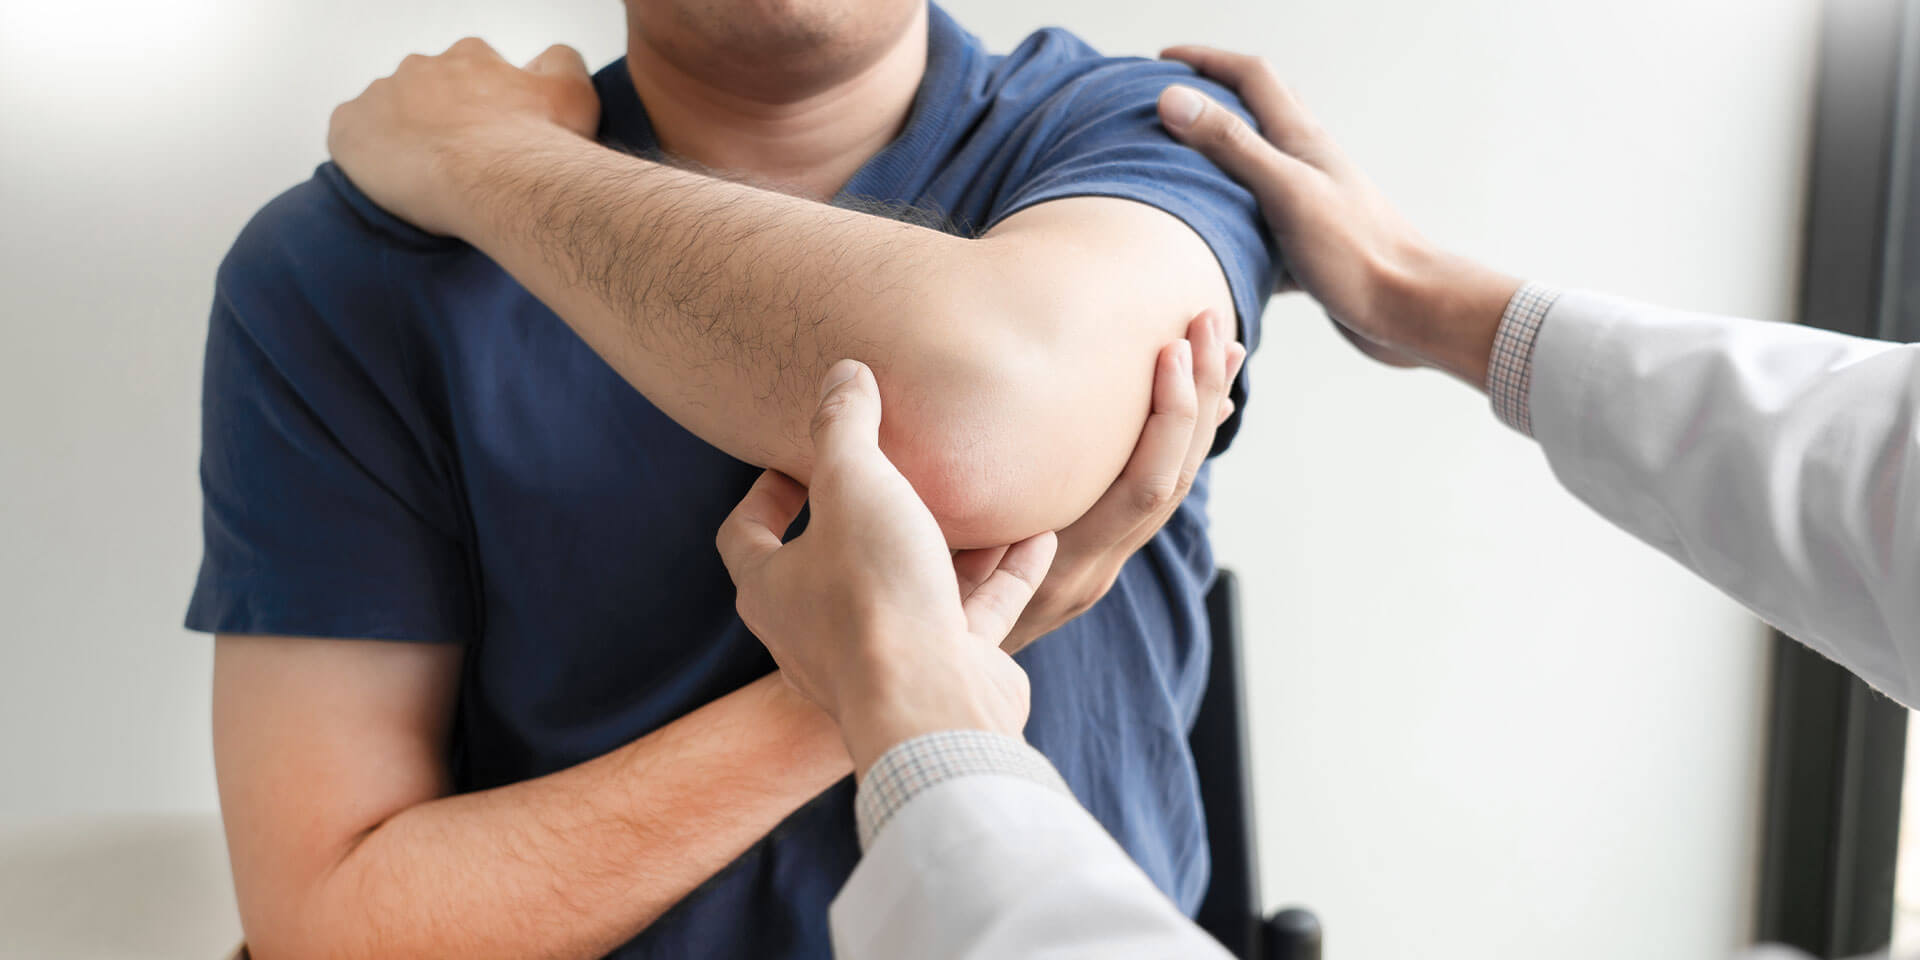 Physiotherapeut behandelt die verletzte Schulter eines Patienten